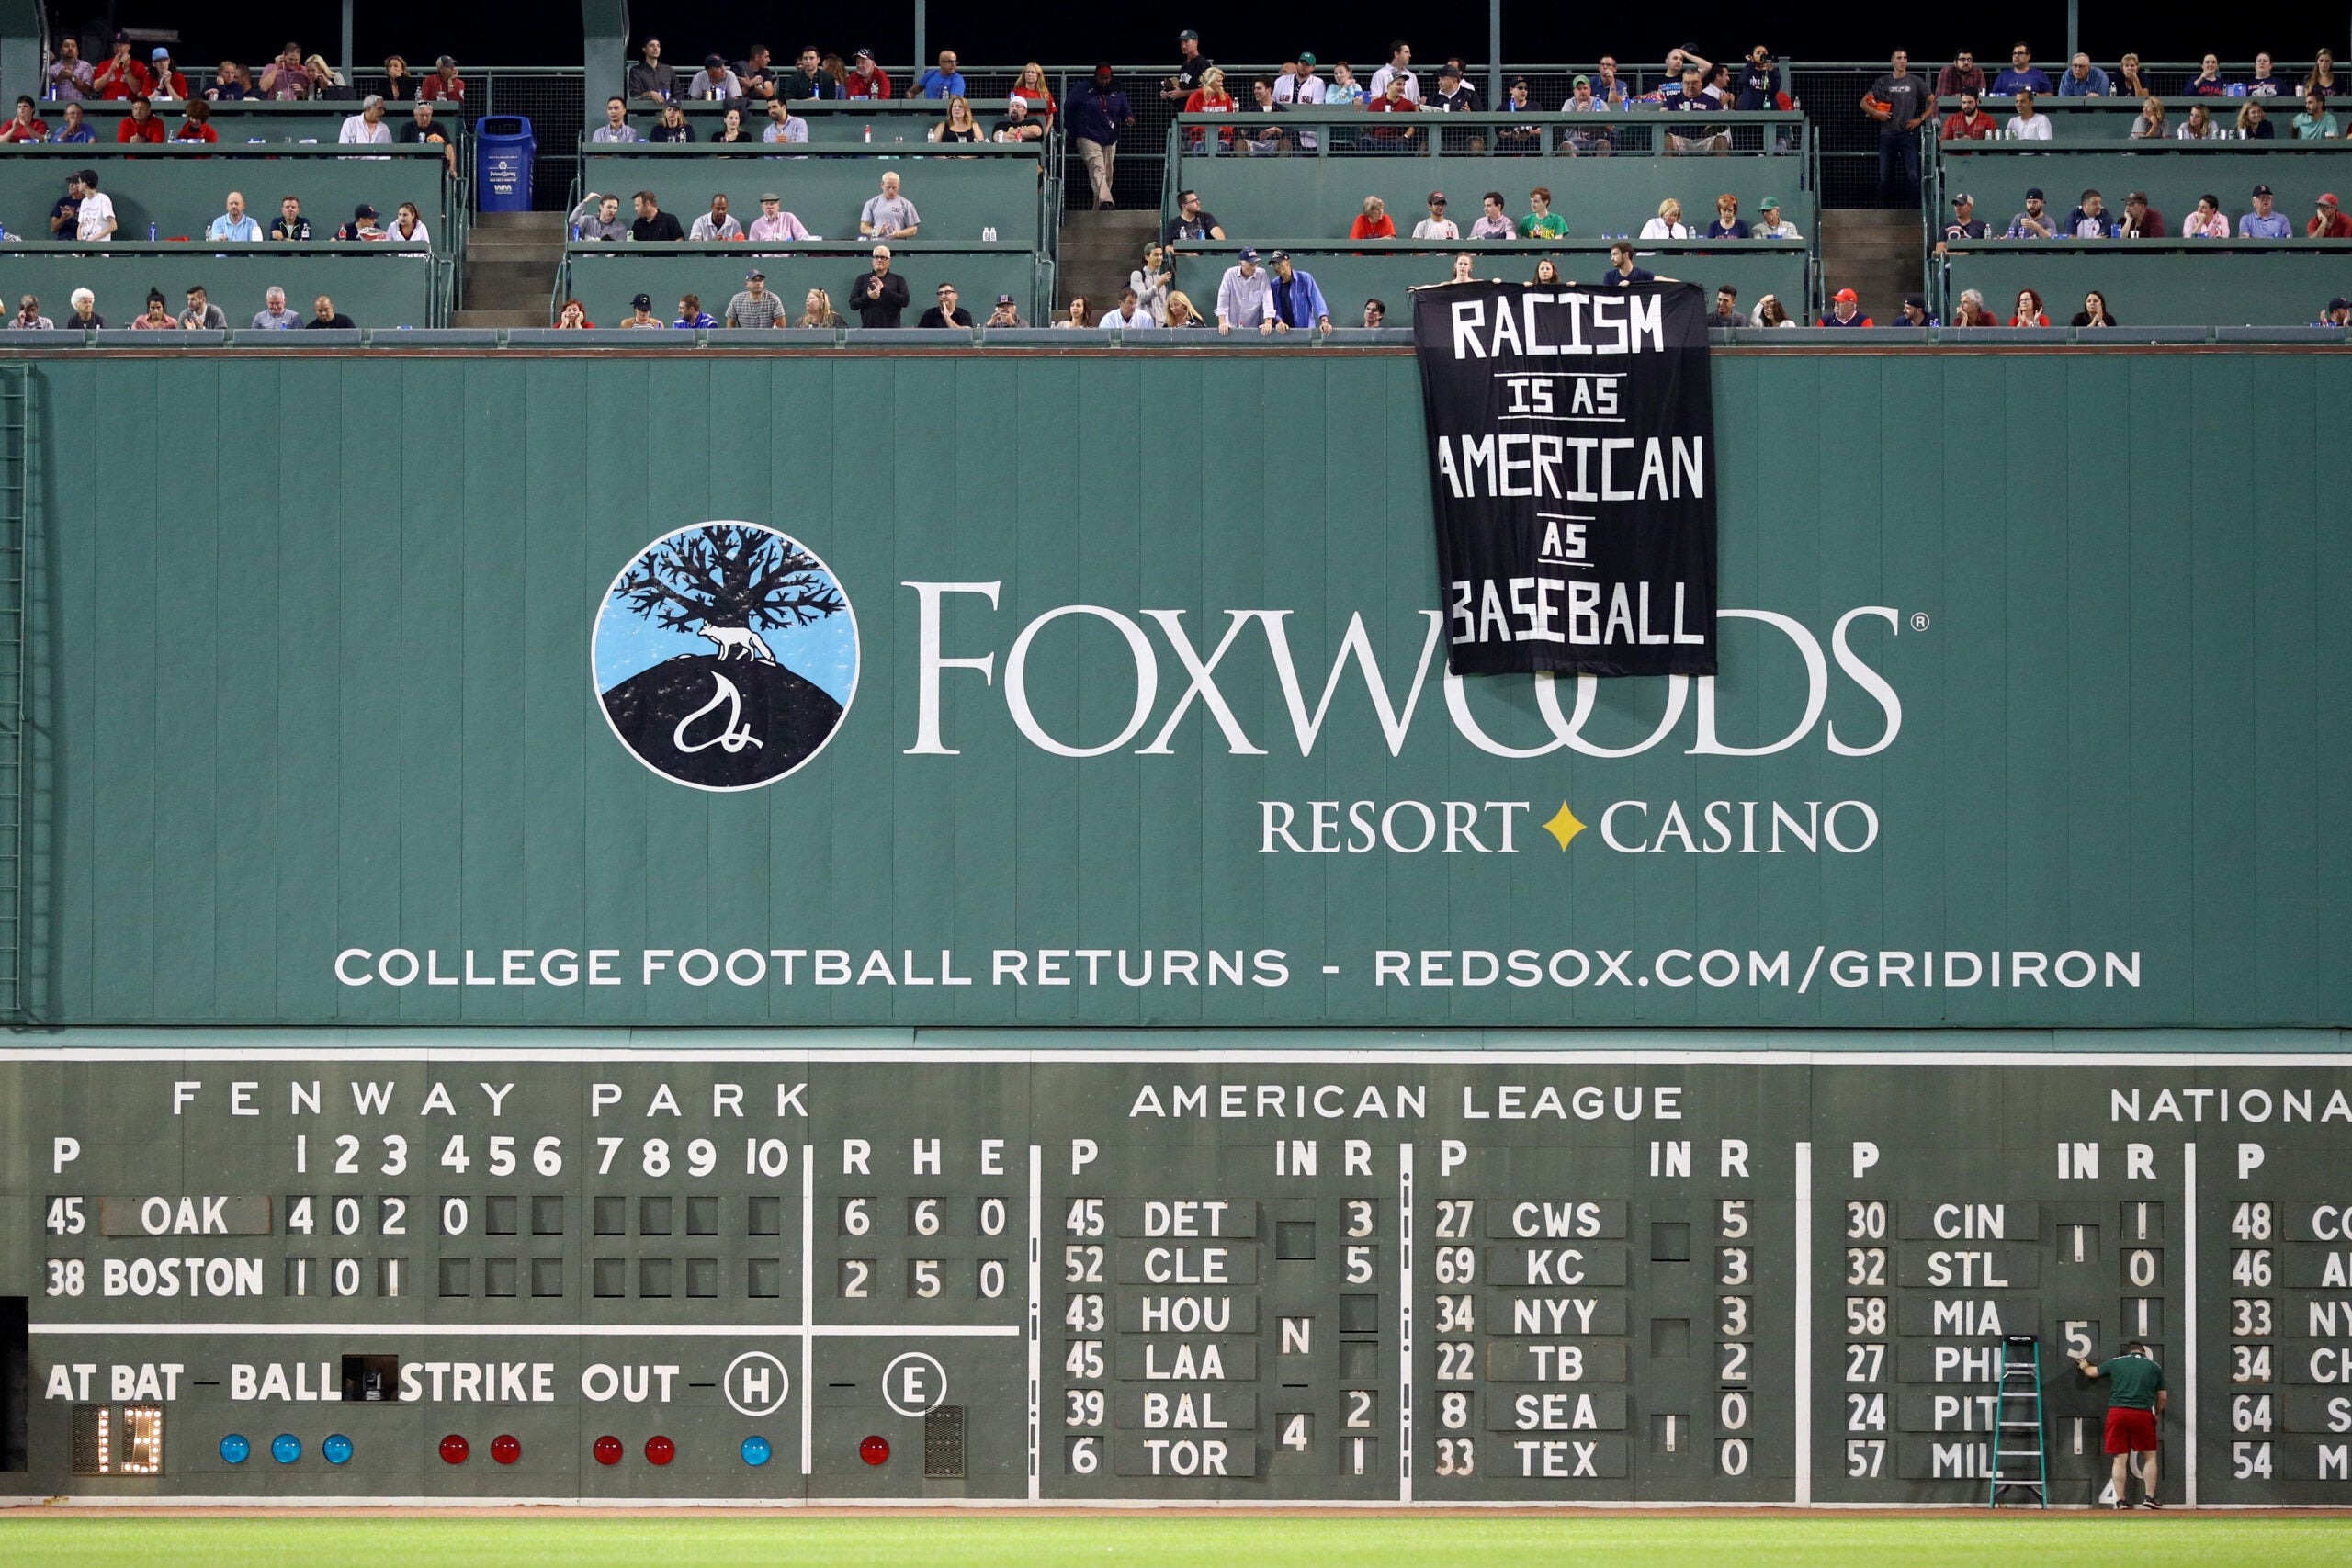 VIDEO: Red Sox Fans Gave Adam Jones a Standing Ovation